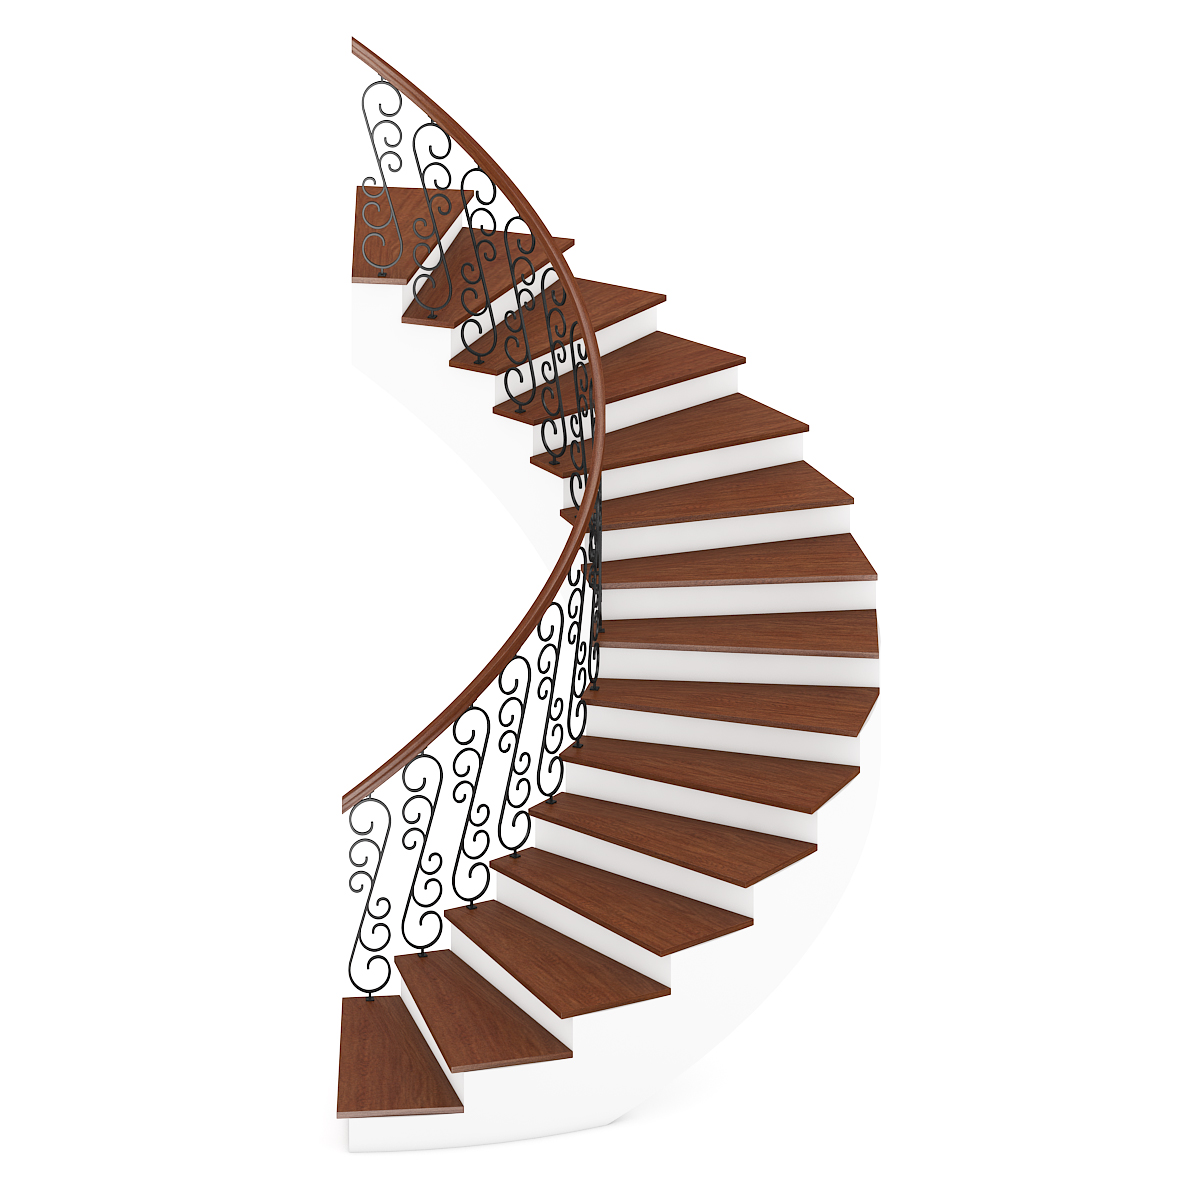 CGAxis Models Volume 42 Stairs + Render Scene